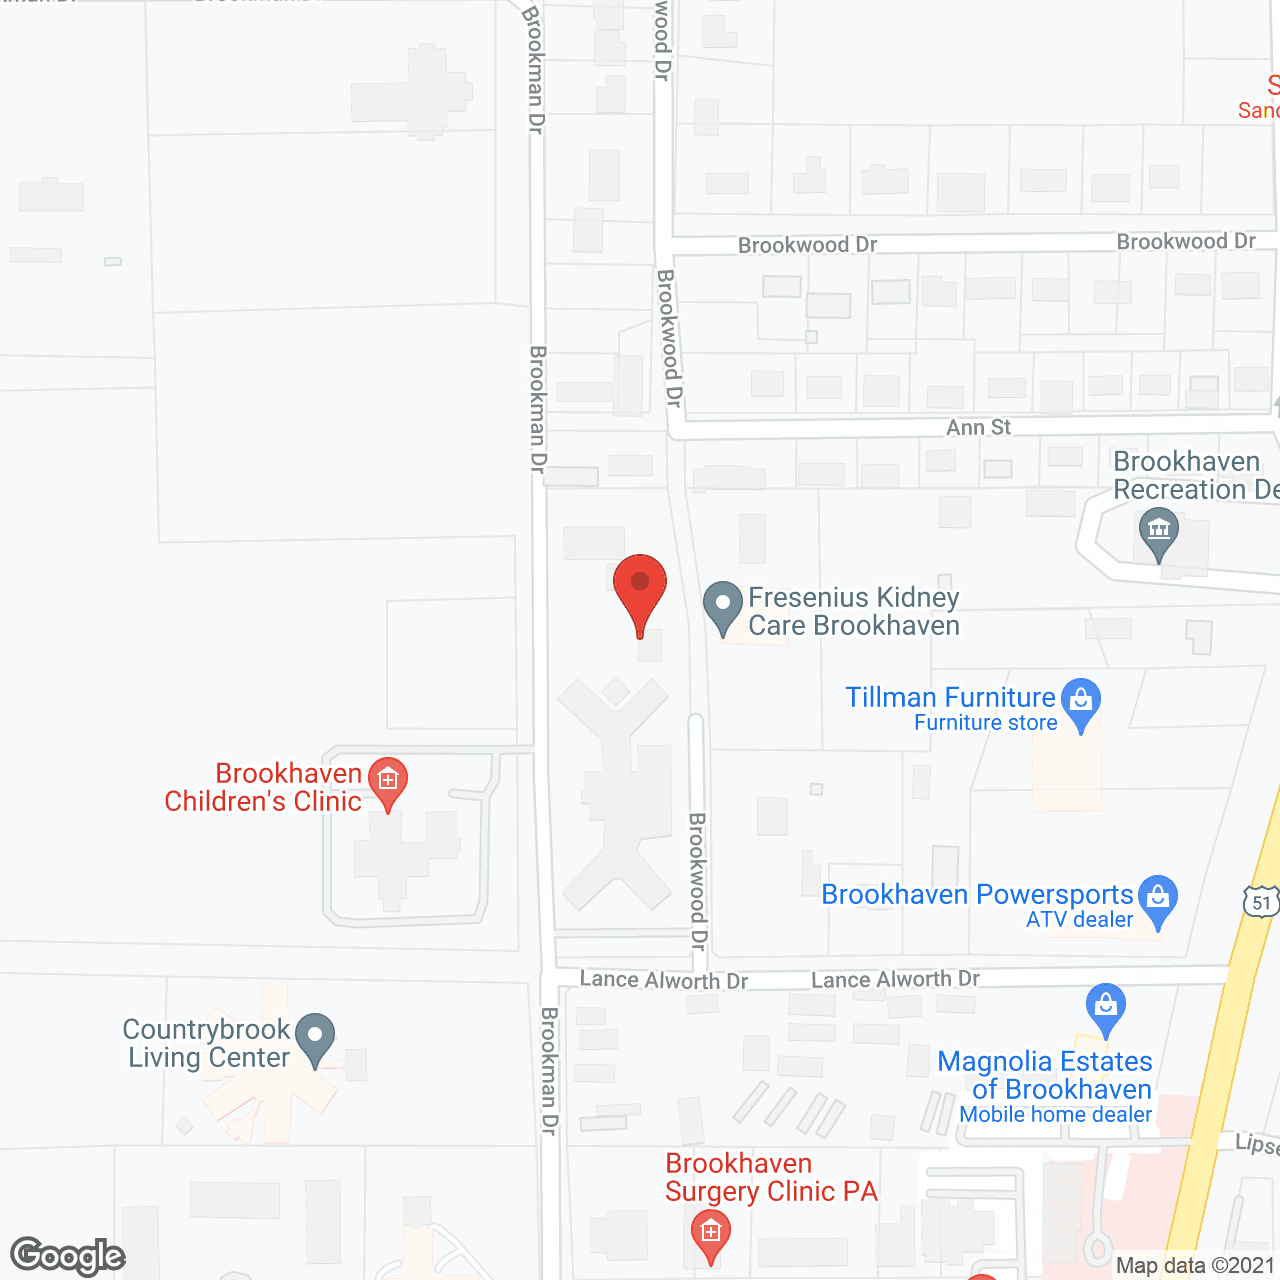 Villa Nova in google map